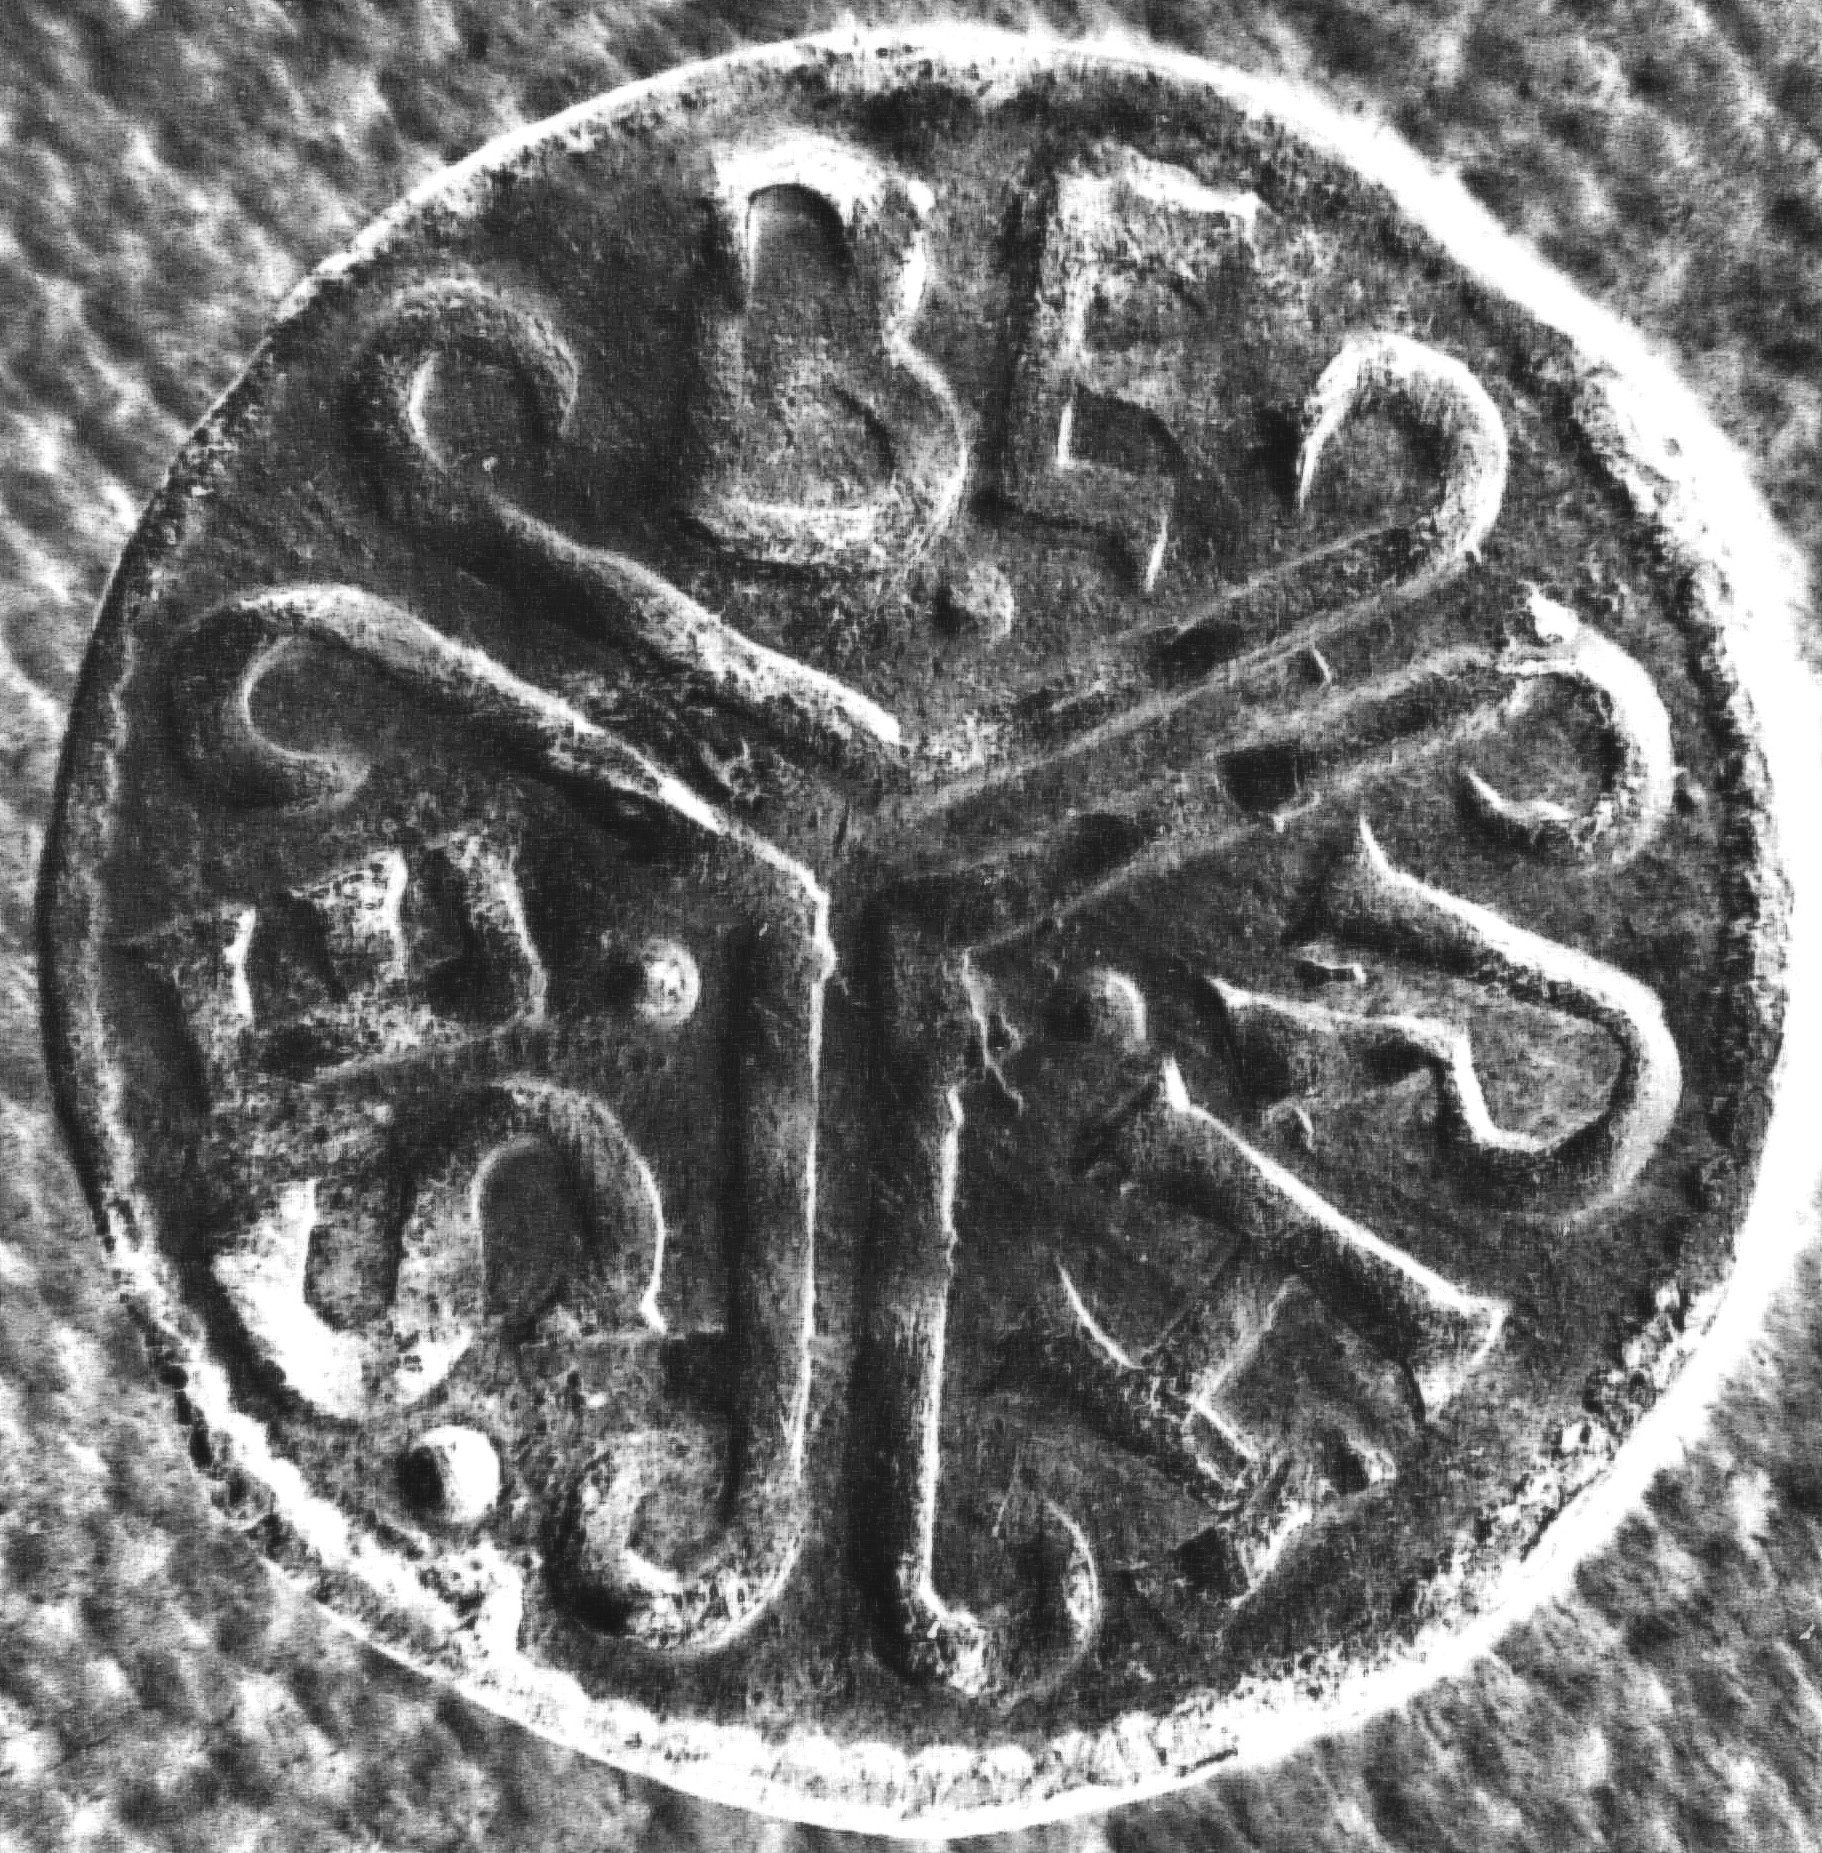 A rare silver Saxon coin bearing the name Coenwulf